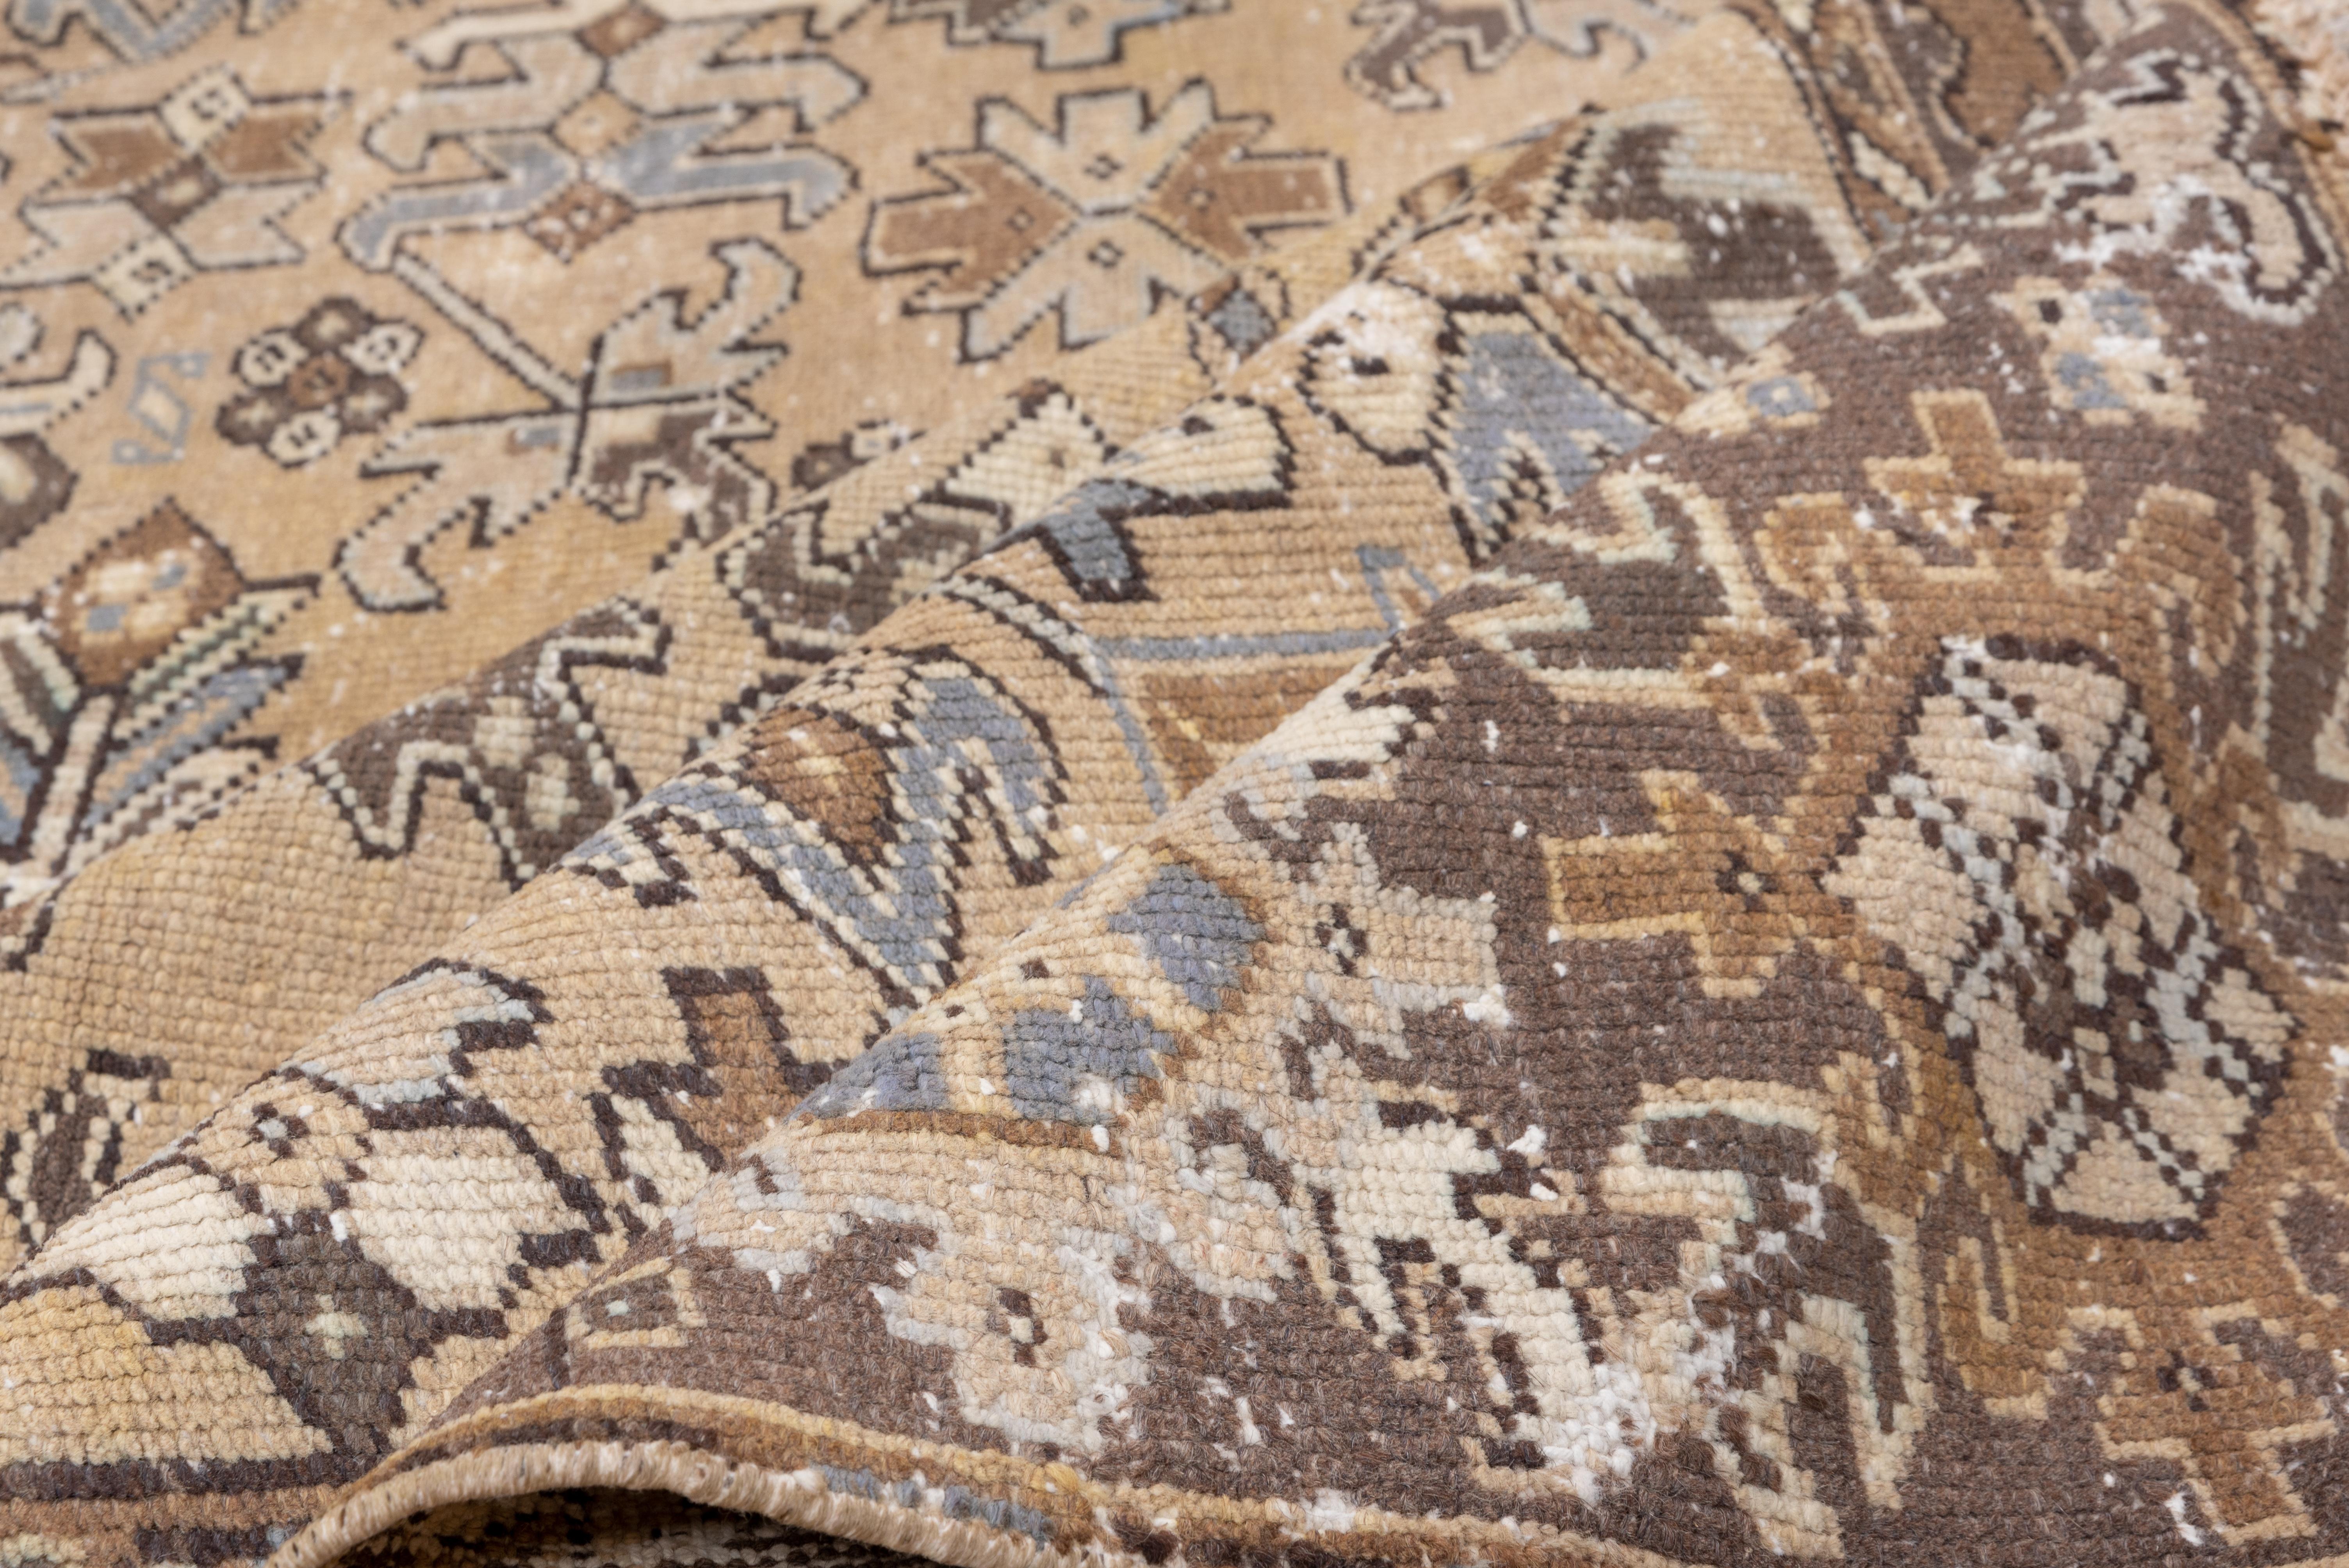 Heriz-Teppiche werden in der nordwestlichen Region des Iran gewebt. Sie sind bekannt für ihre strapazierfähige Wollqualität und ihre geometrischen Designs. Sie sind stark von der Geometrie der kaukasischen Teppiche aus dem Kaukasus beeinflusst, der